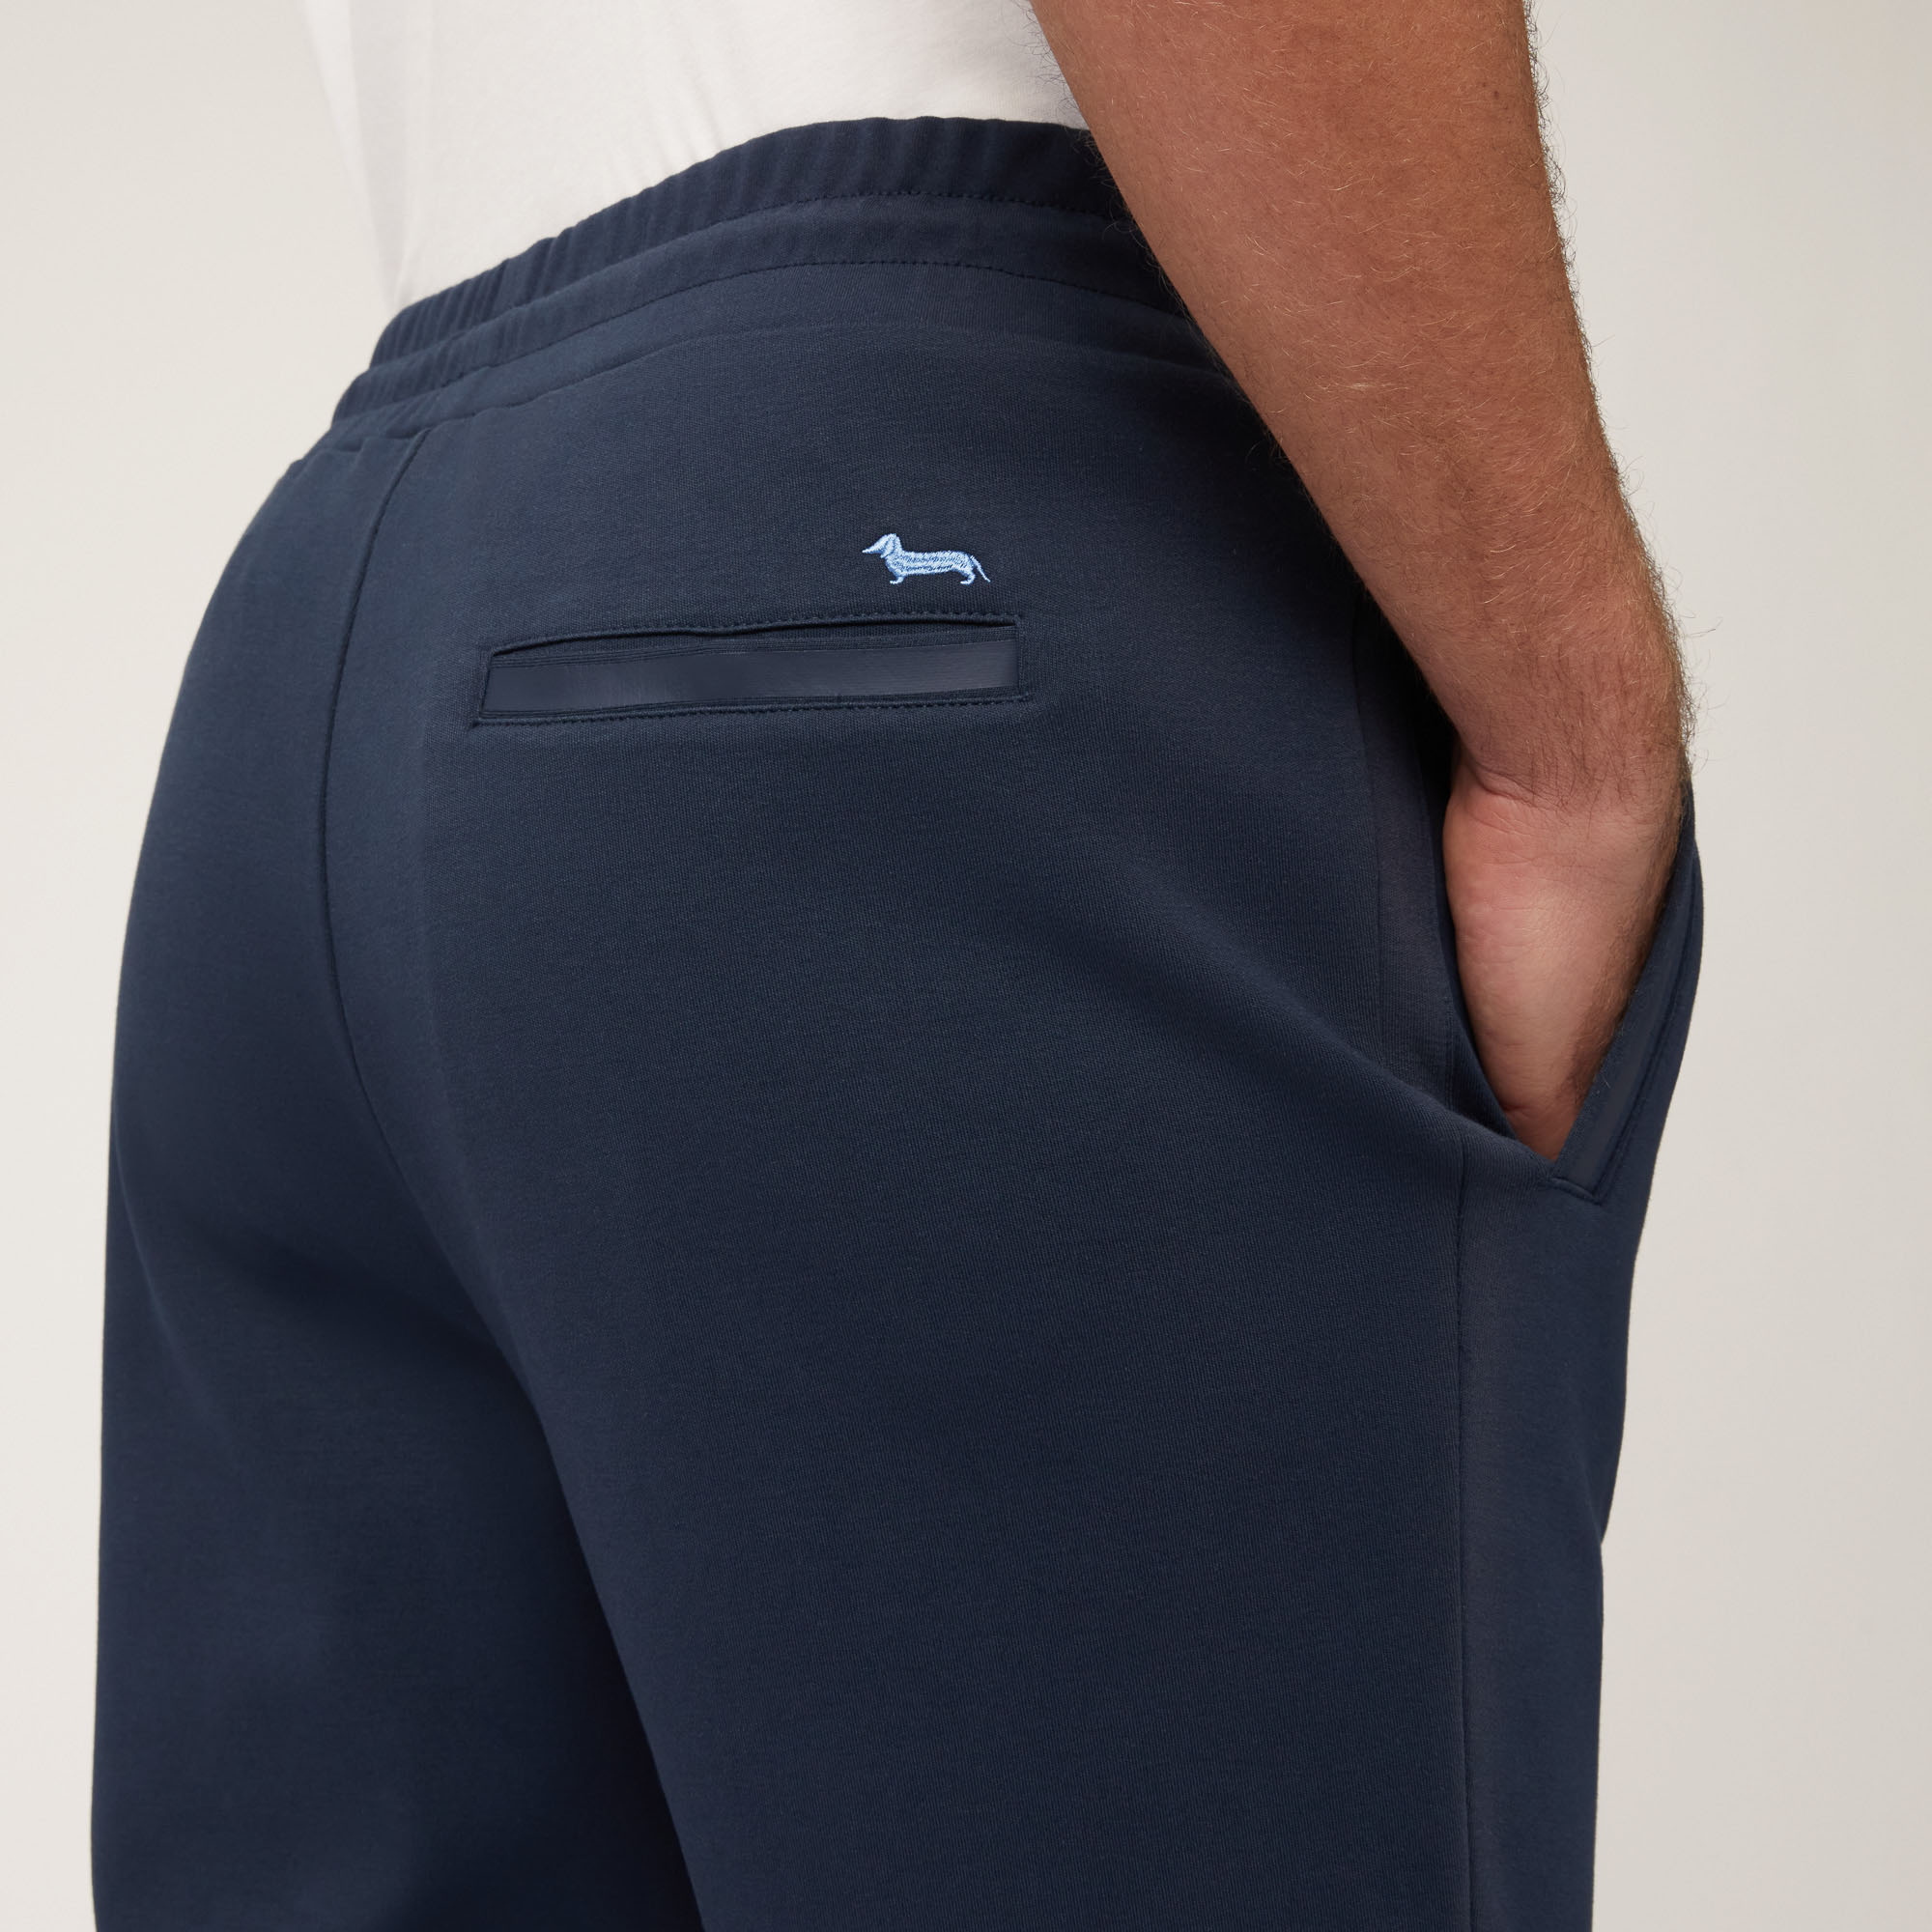 Cotton Pants with Back Pocket, Blue, large image number 2